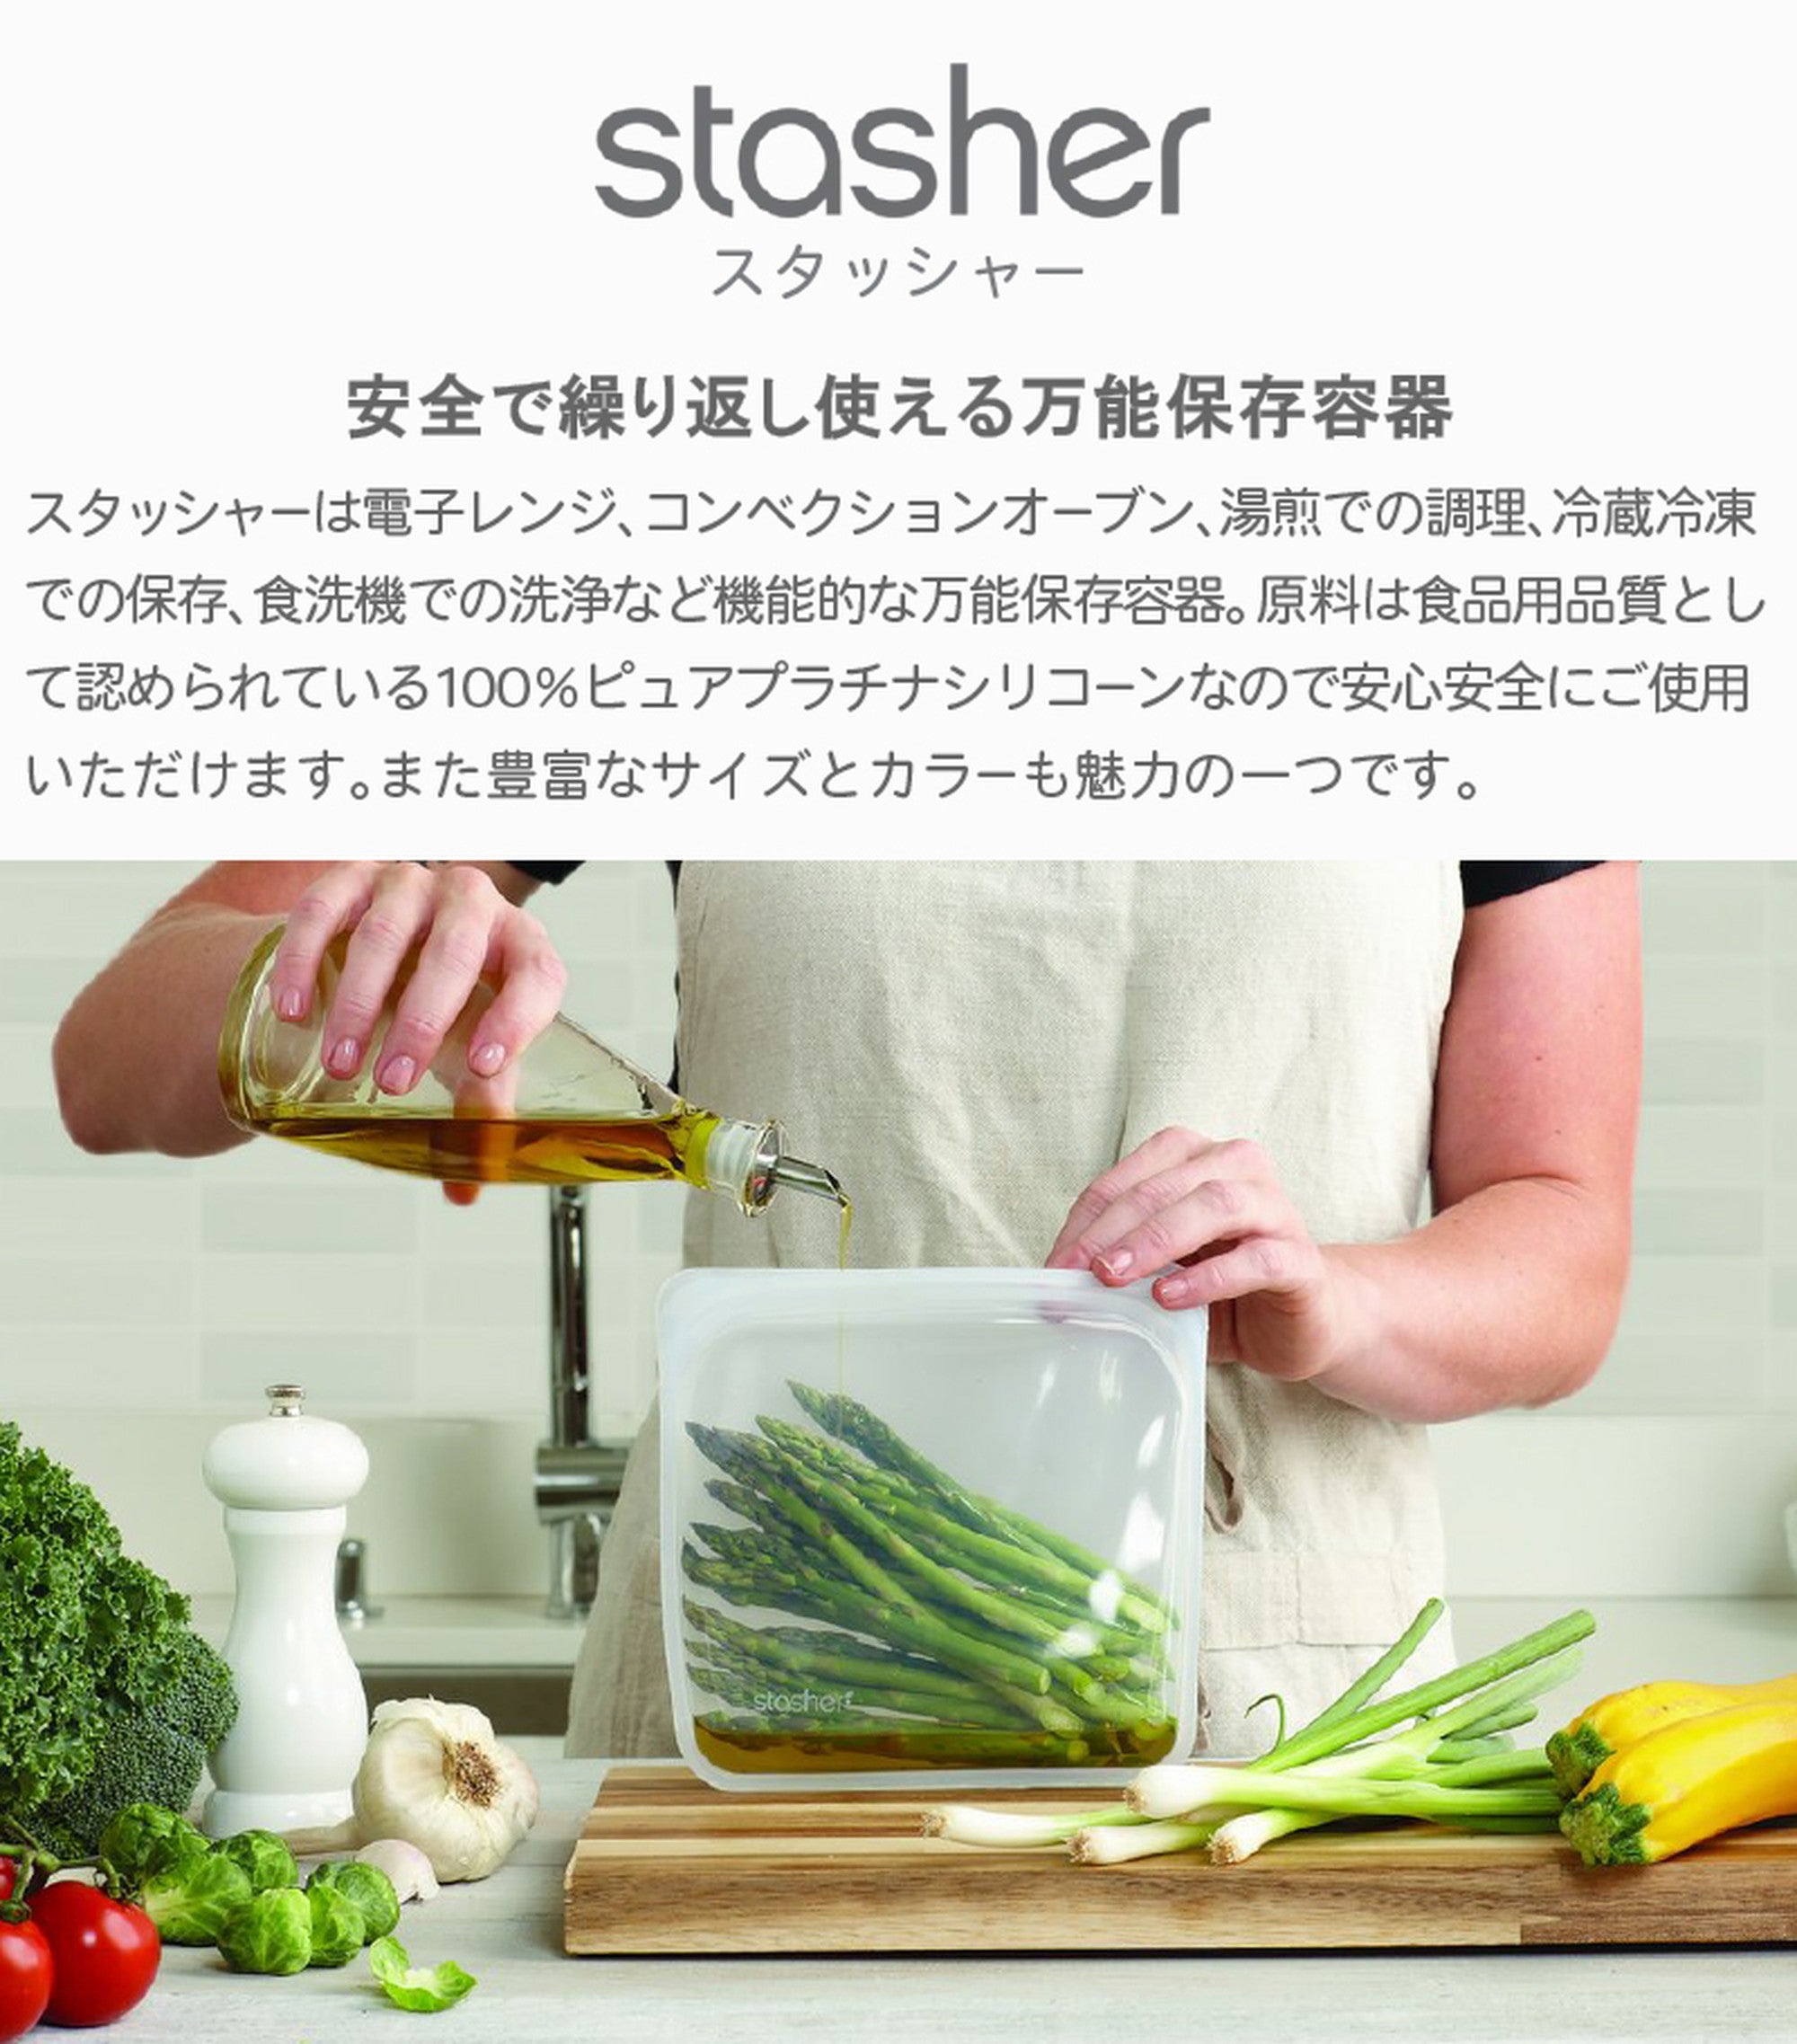 スタッシャー シリコンバッグ stasher 日本正規品 サンドイッチ Mサイズ 30色